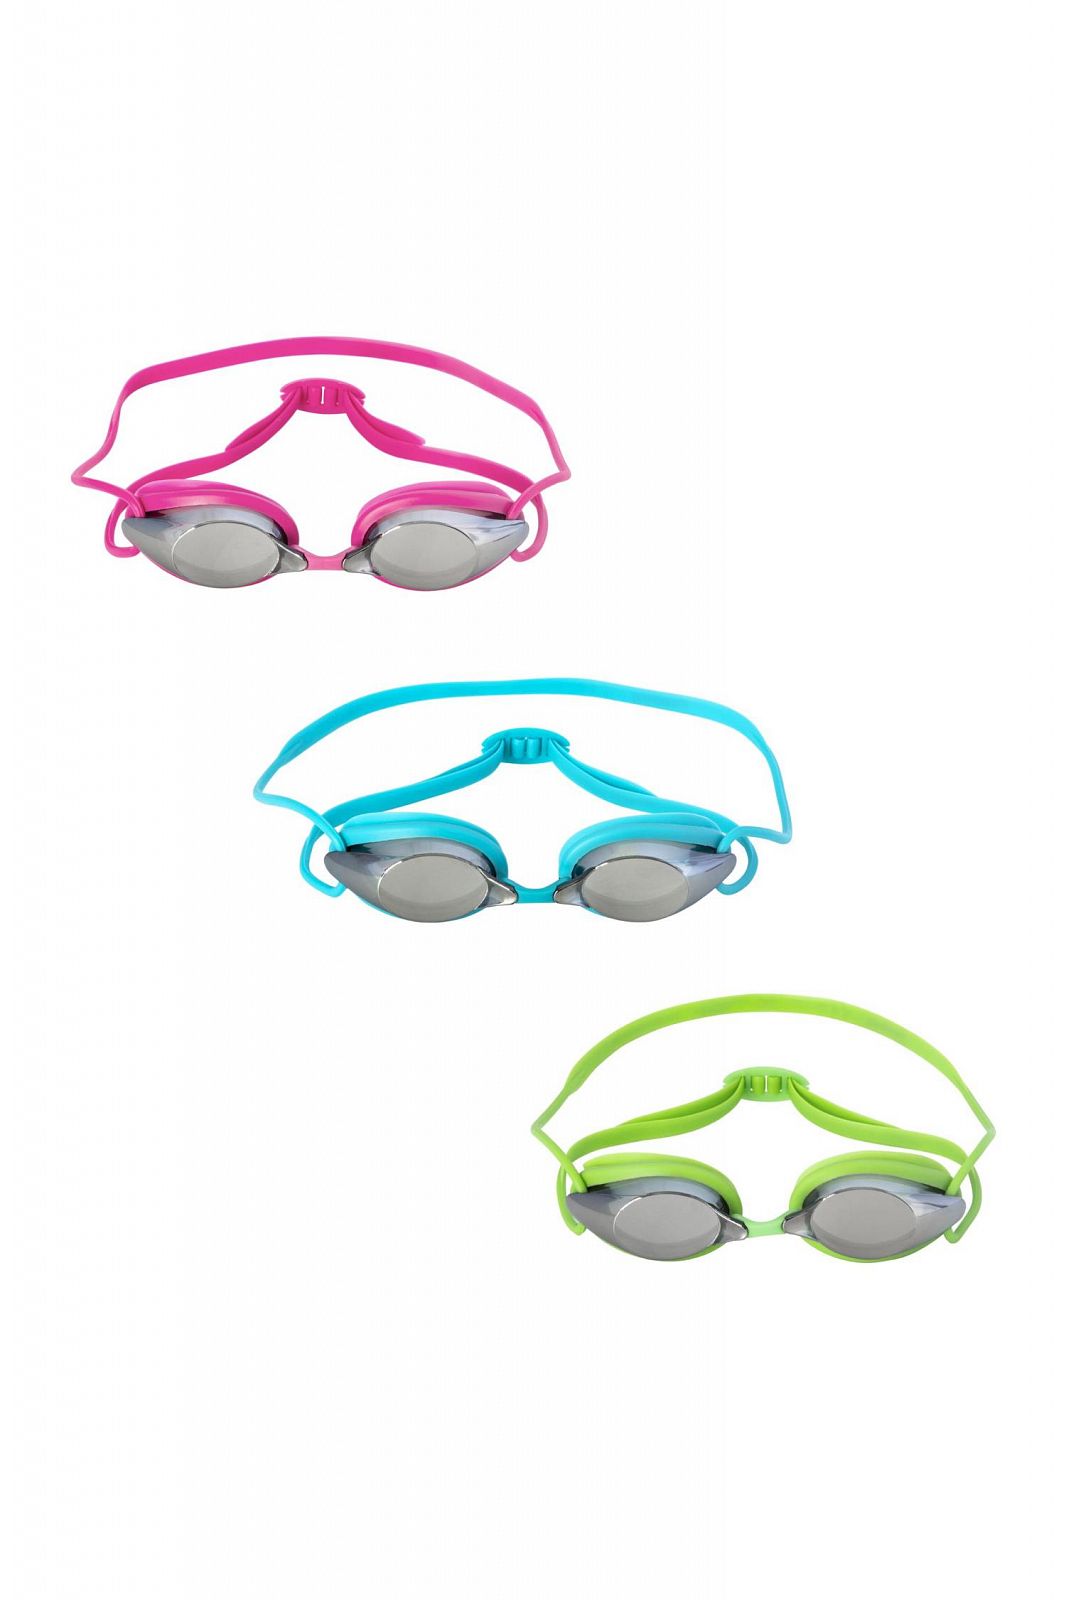 Очки для плавания "IX-1200" от 7 лет, 2 цвета, Bestway 21070 BW